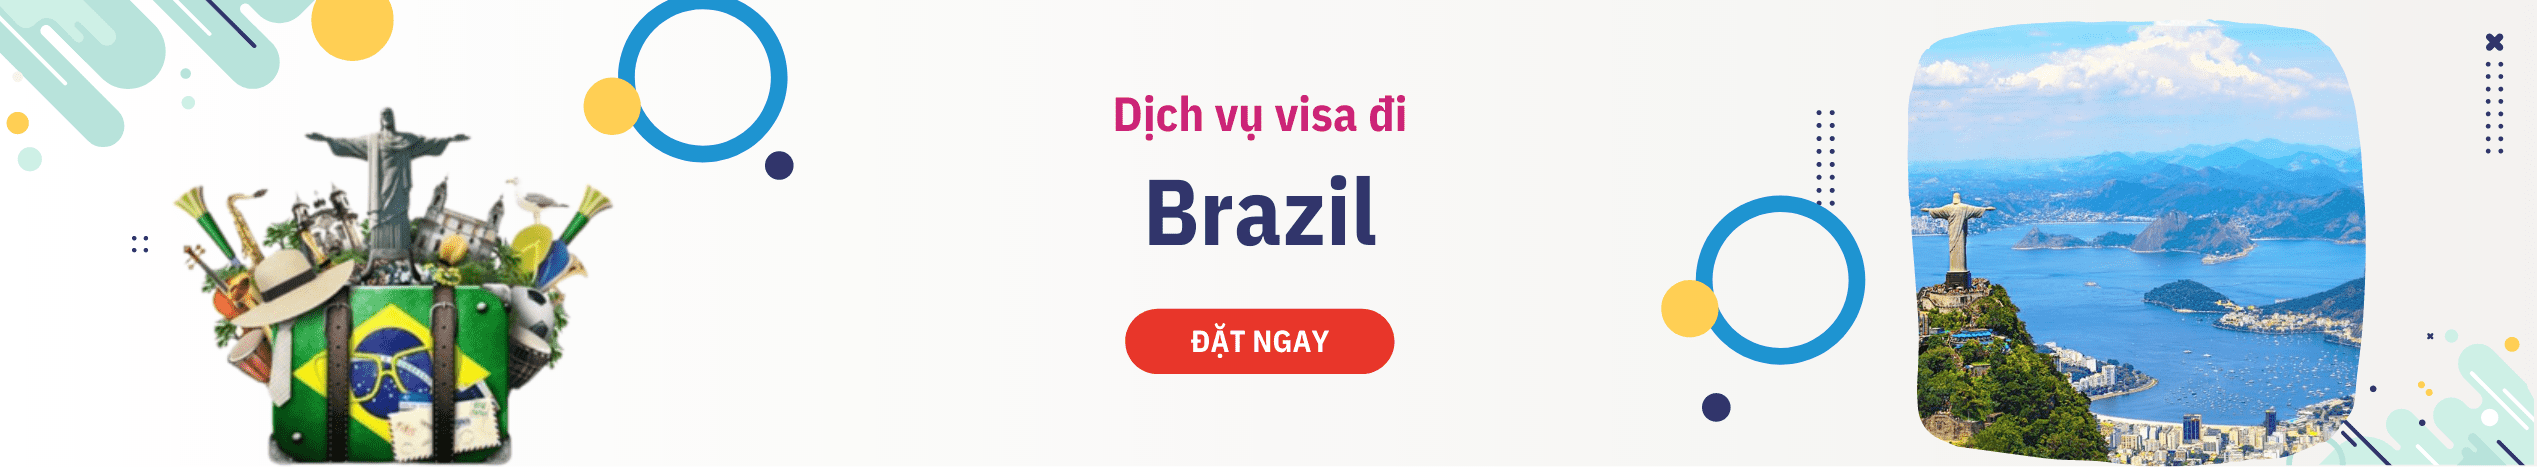 Hỗ trợ xin Visa Brazil du lịch, công tác & thăm thân